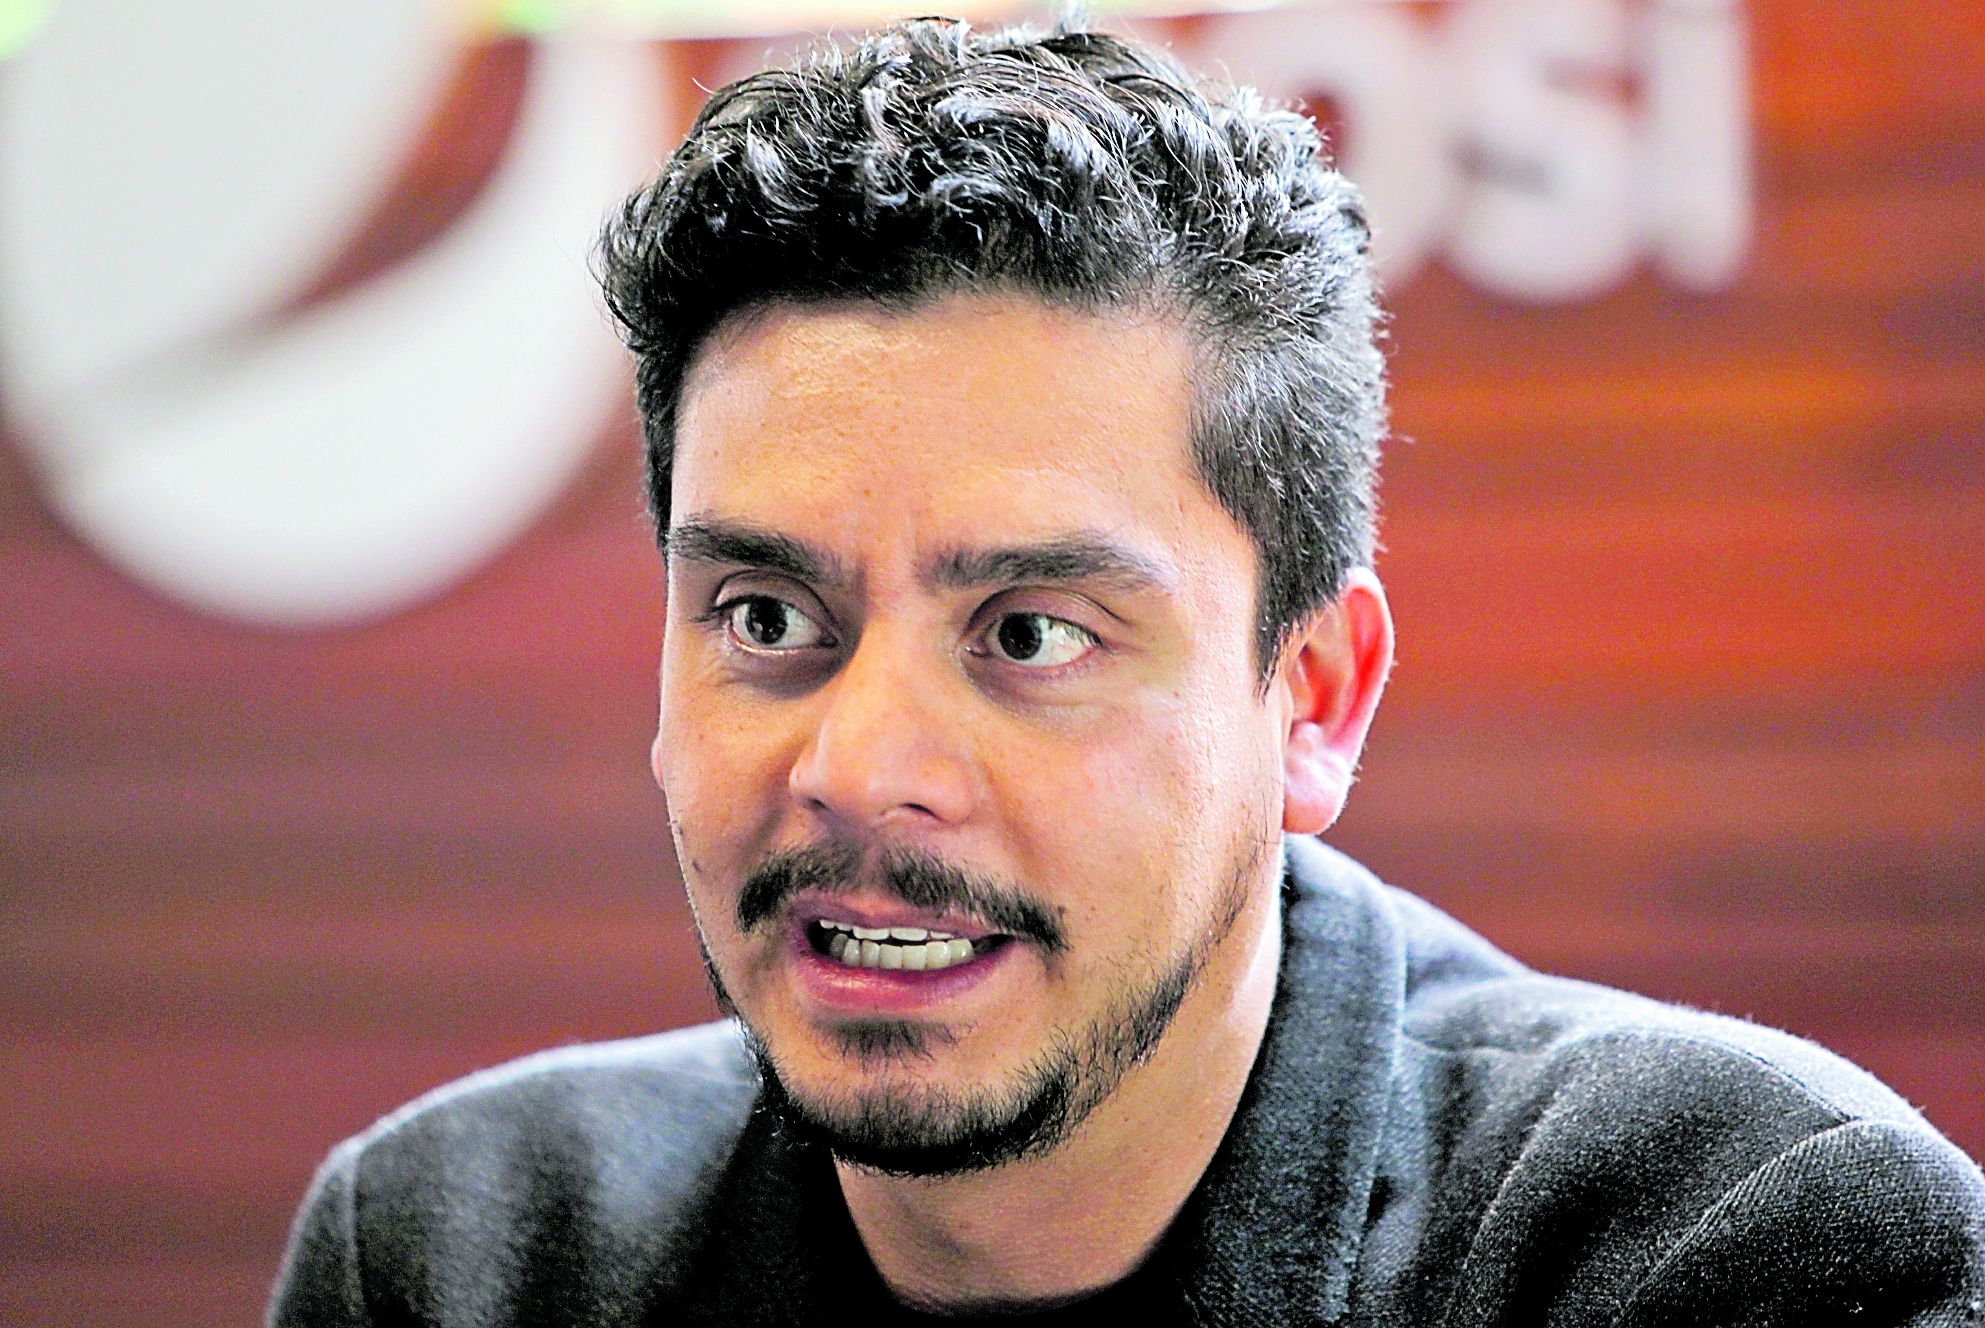 Jayro Bustamante participó por primera vez en la Berlinale en 2015, con la premiada Ixcanul. (Foto Prensa Libre: Erick Avila)